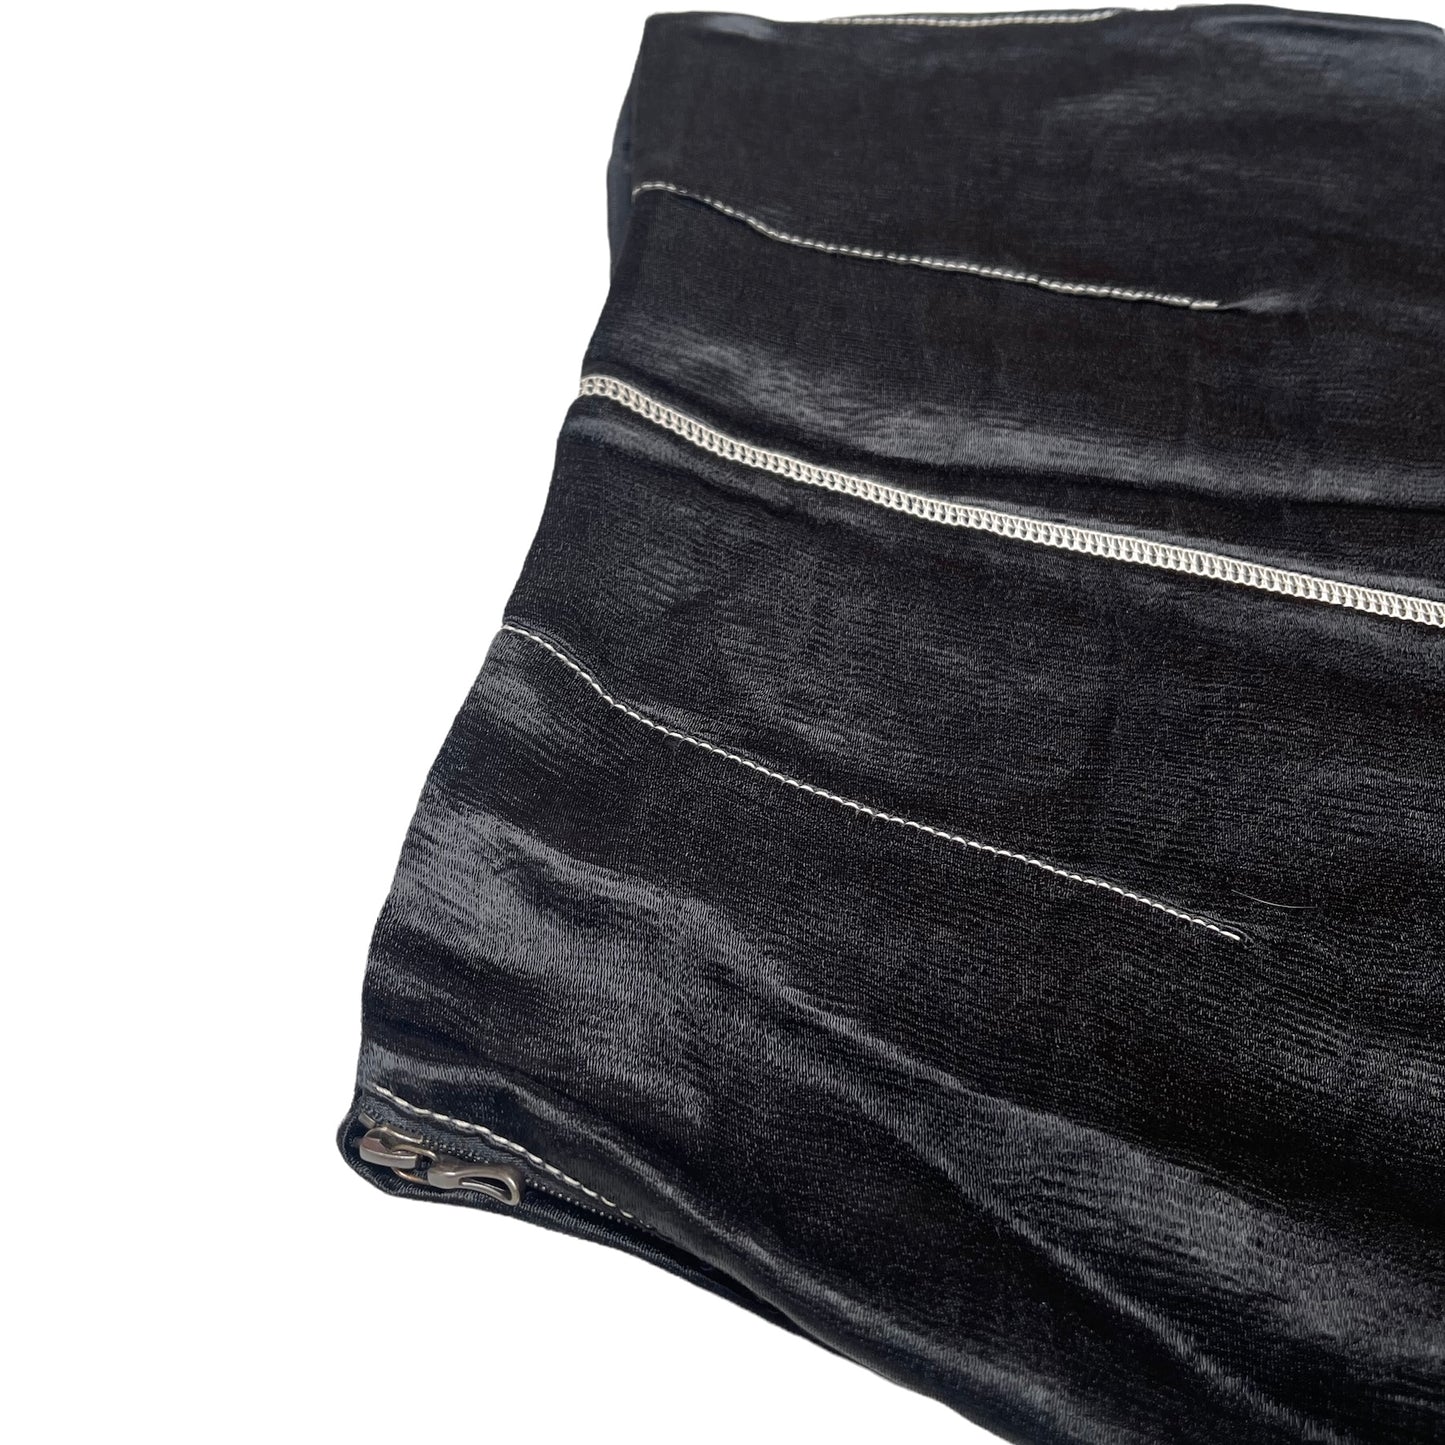 Black Straight Skirt - S